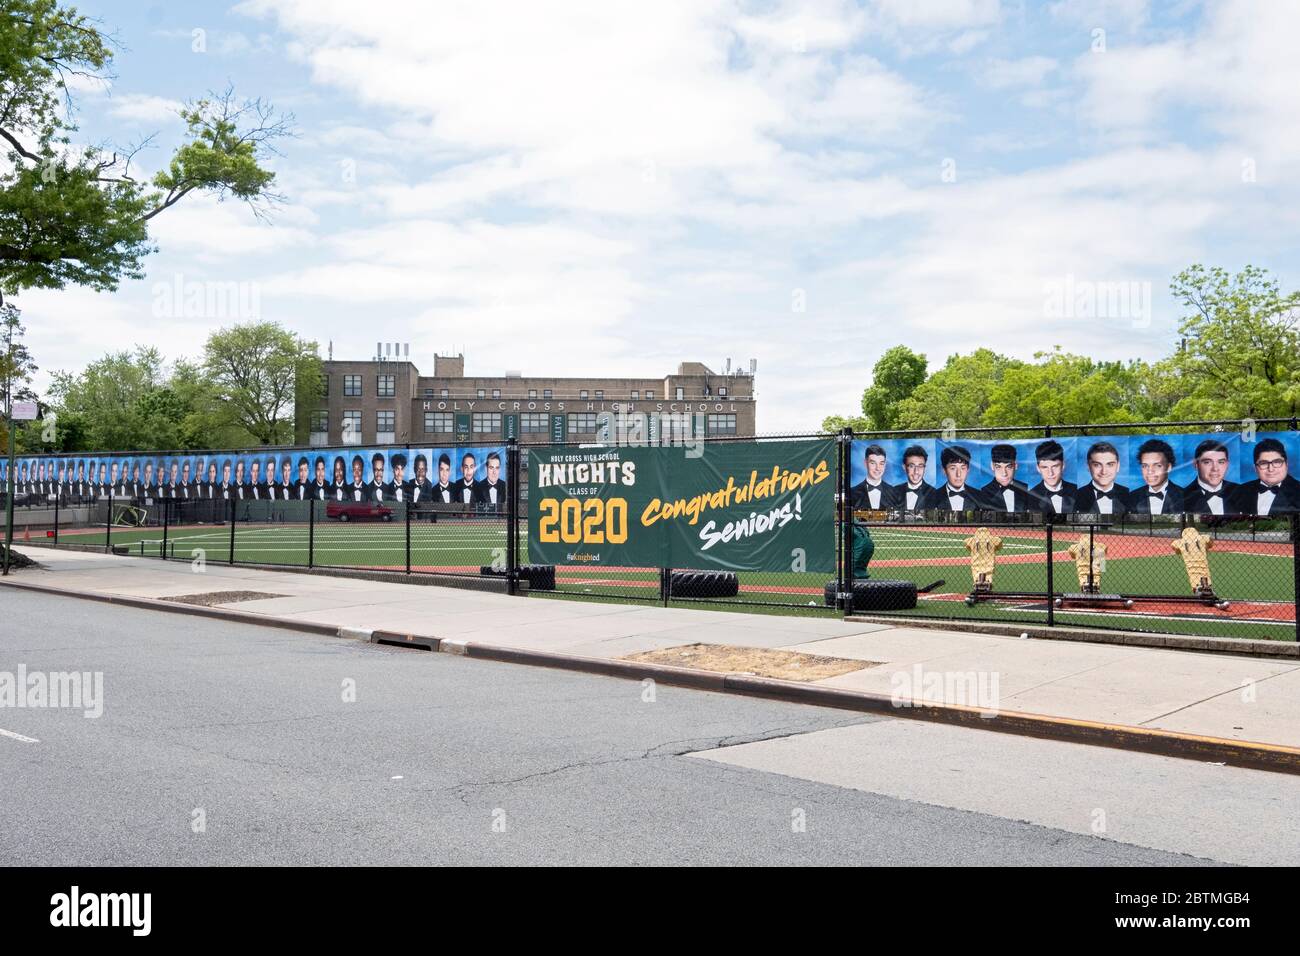 Au lieu d'une cérémonie de remise des diplômes, l'école secondaire Holy Cross a accroché une bannière et des photos des aînés diplômés. À Flushing, Queens, New York. Banque D'Images